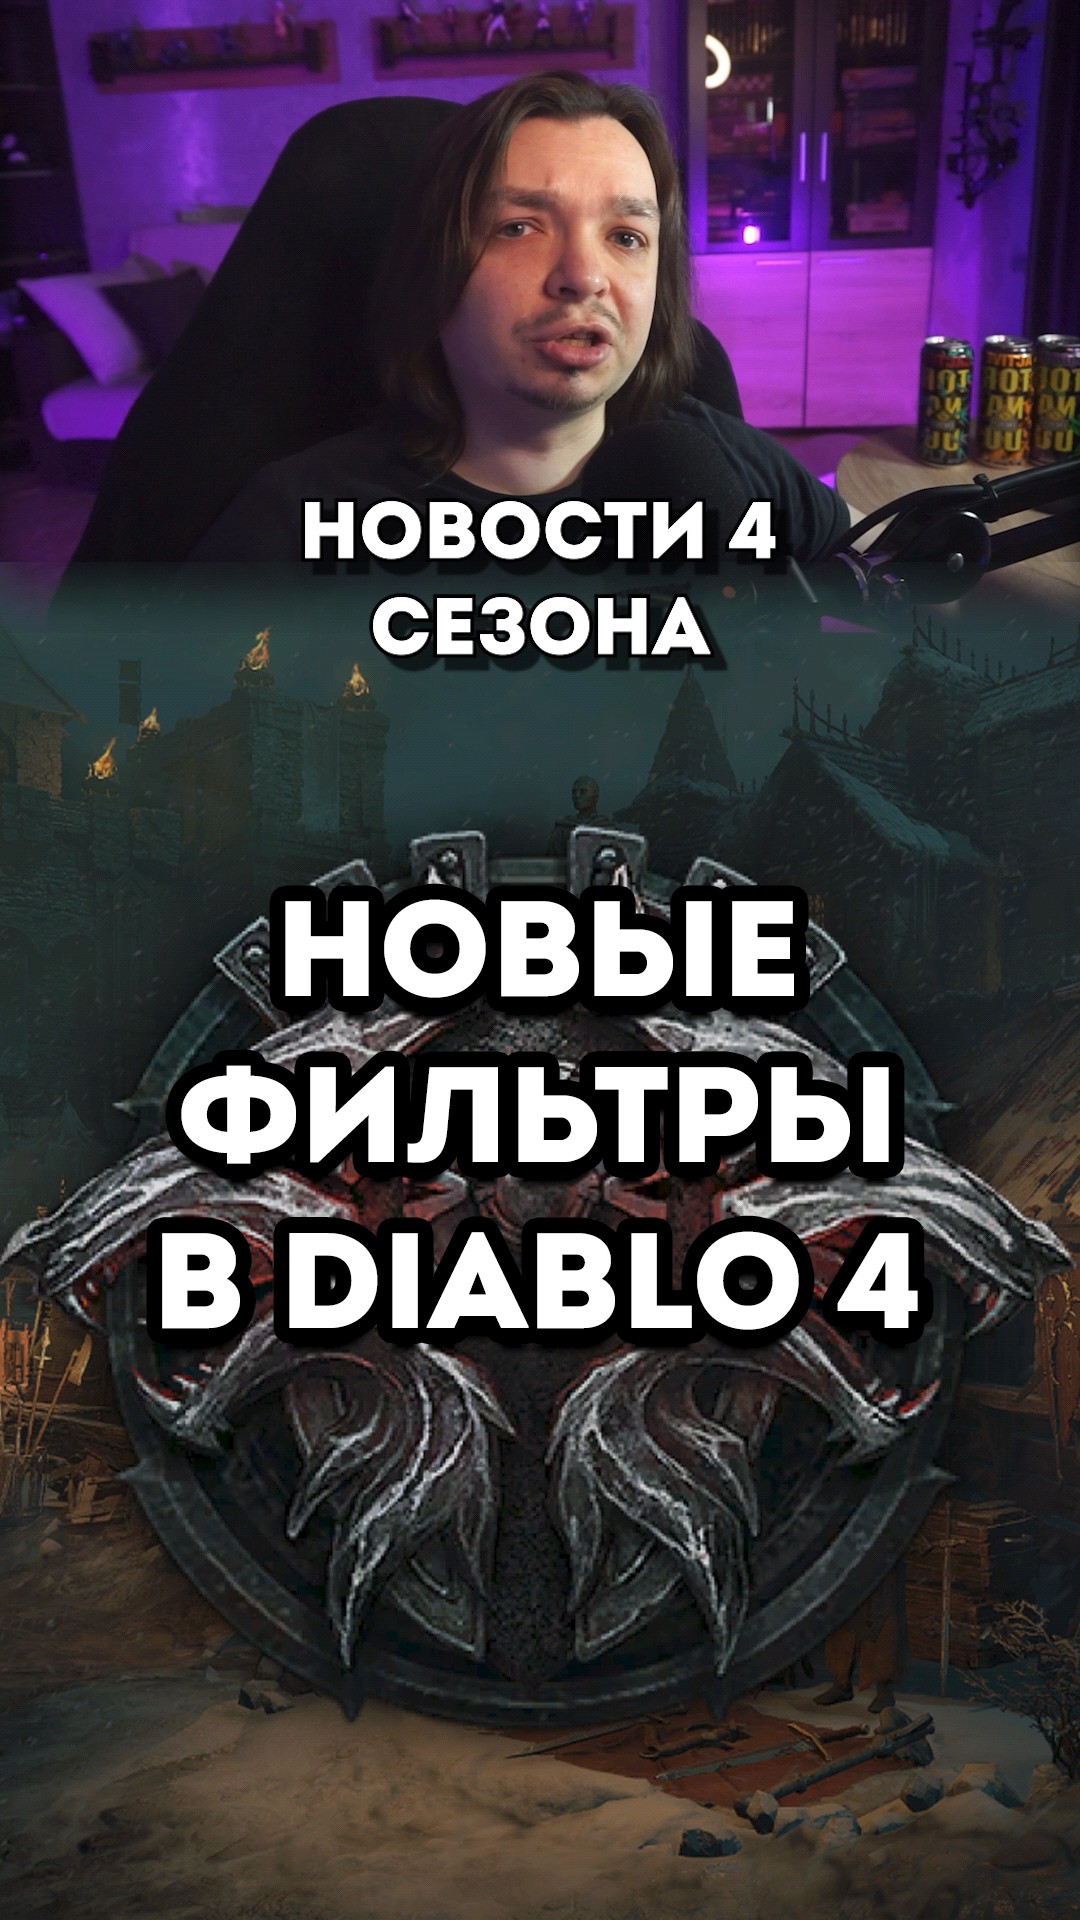 Diablo 4 Новости 4 Сезона Железных волков Фильтр тайника